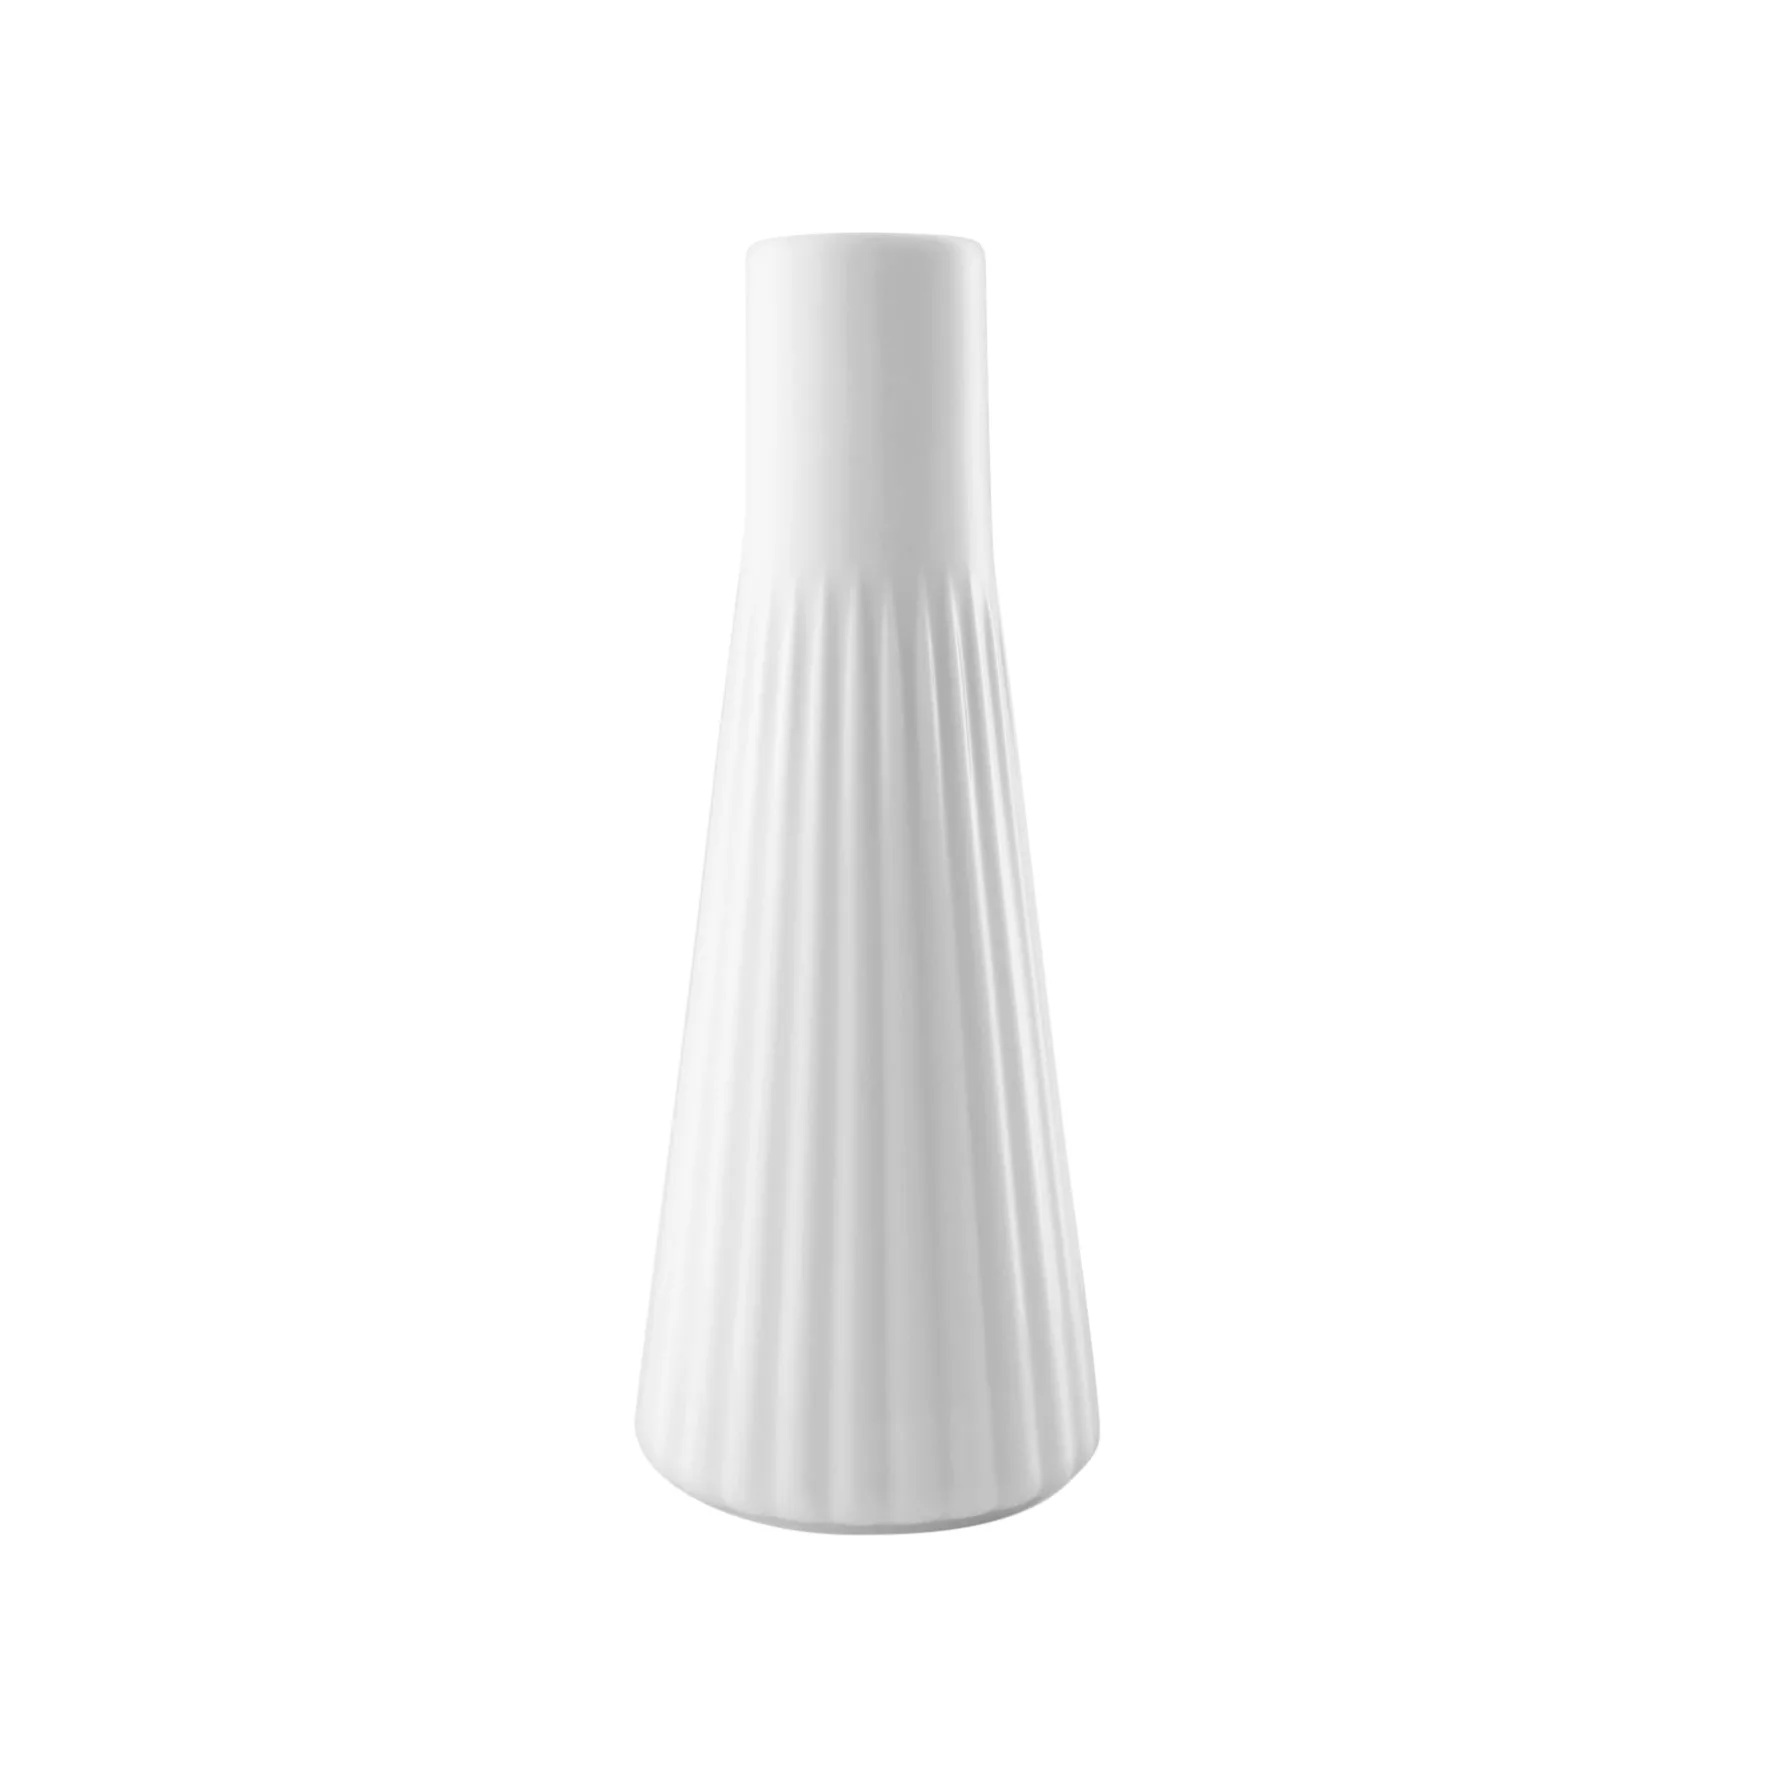 Eva Solo - Legio Nova Kerzenständer - weiß/glänzend/LxBxH 6x6x16cm günstig online kaufen